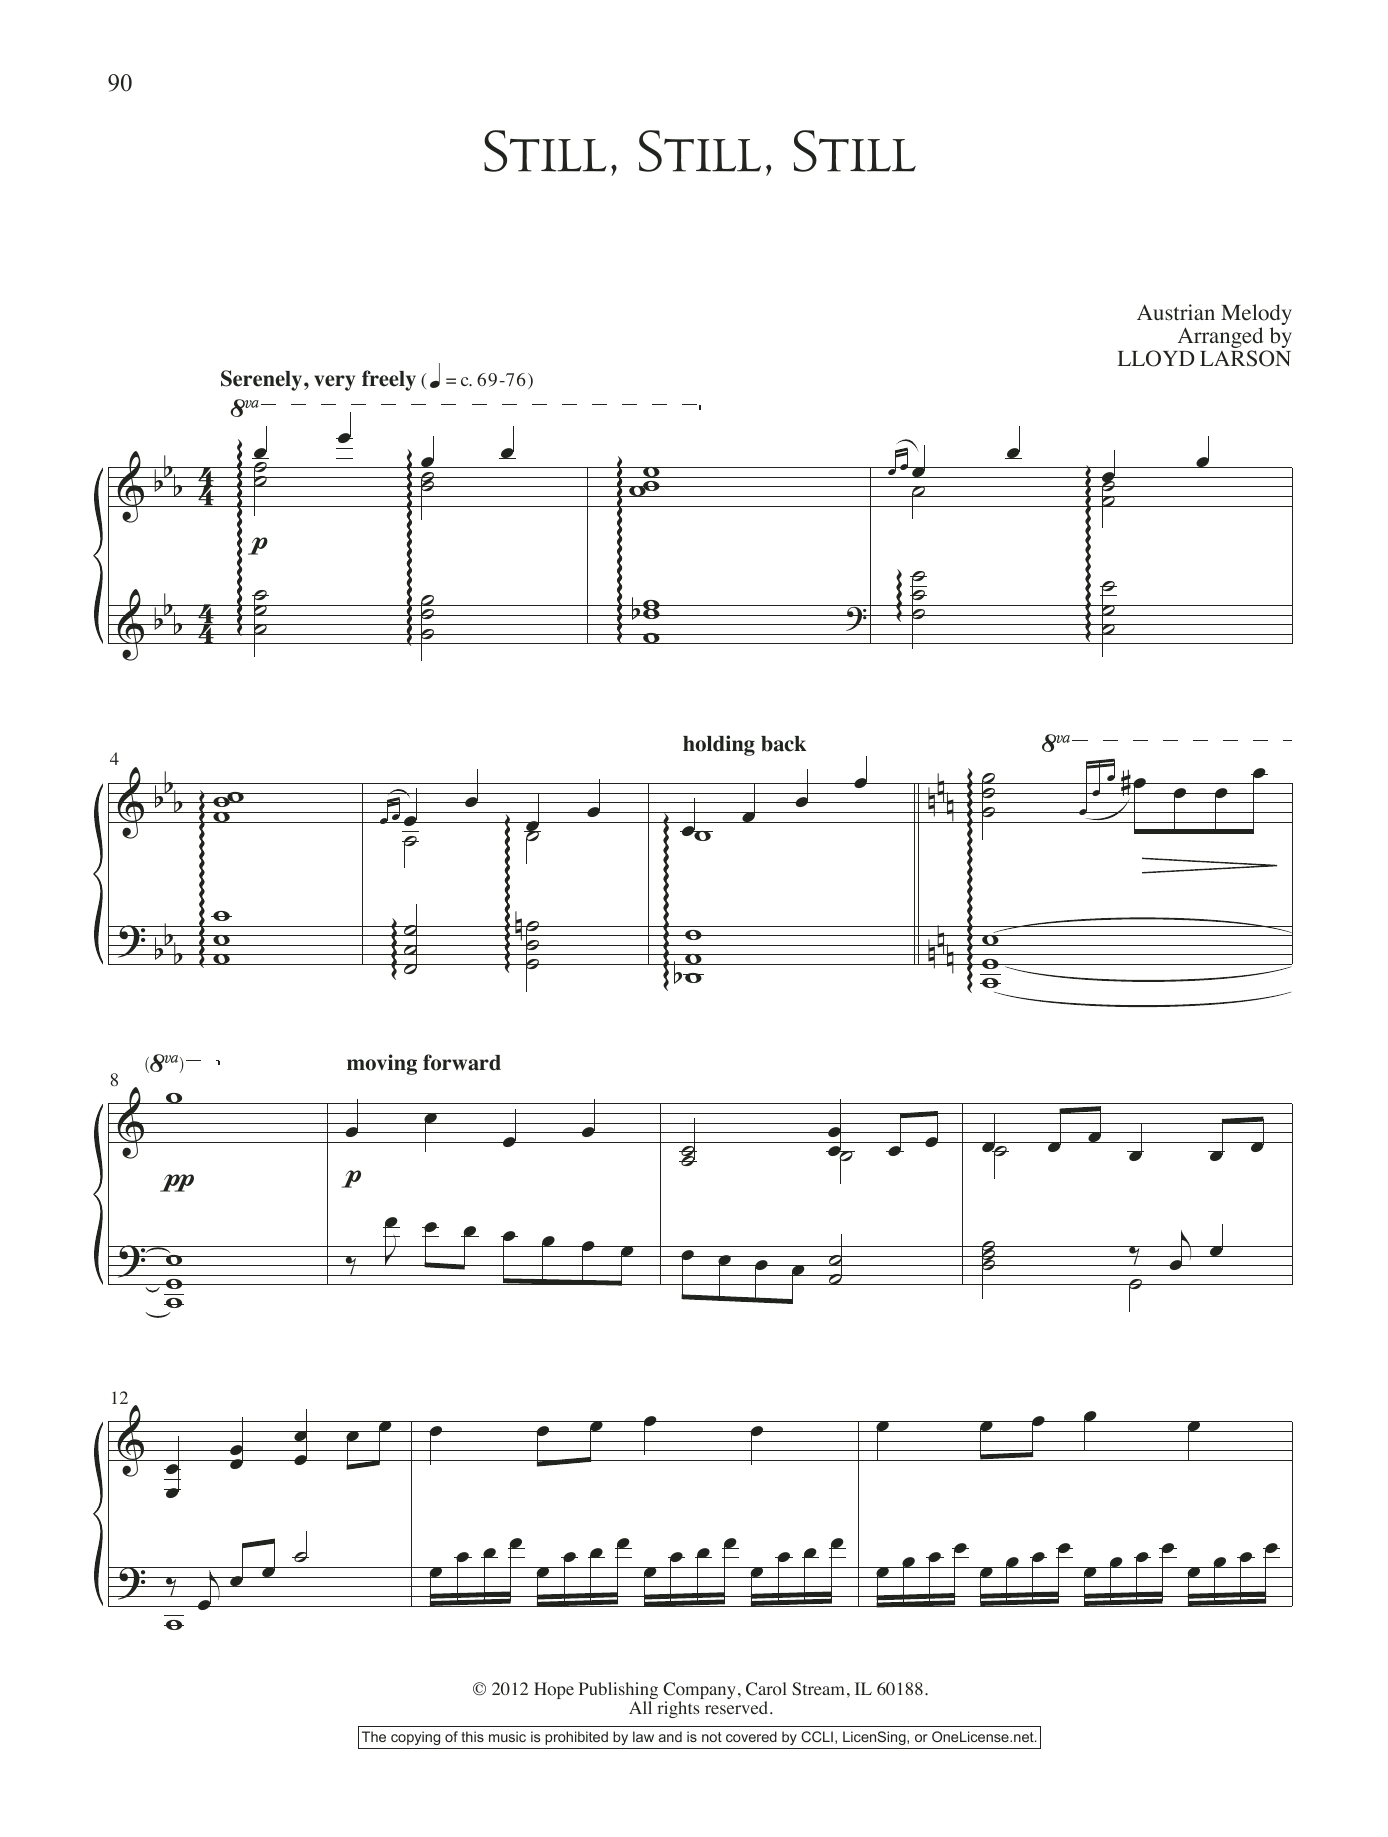 Lloyd Larson Still, Still, Still Sheet Music Notes & Chords for Piano Solo - Download or Print PDF